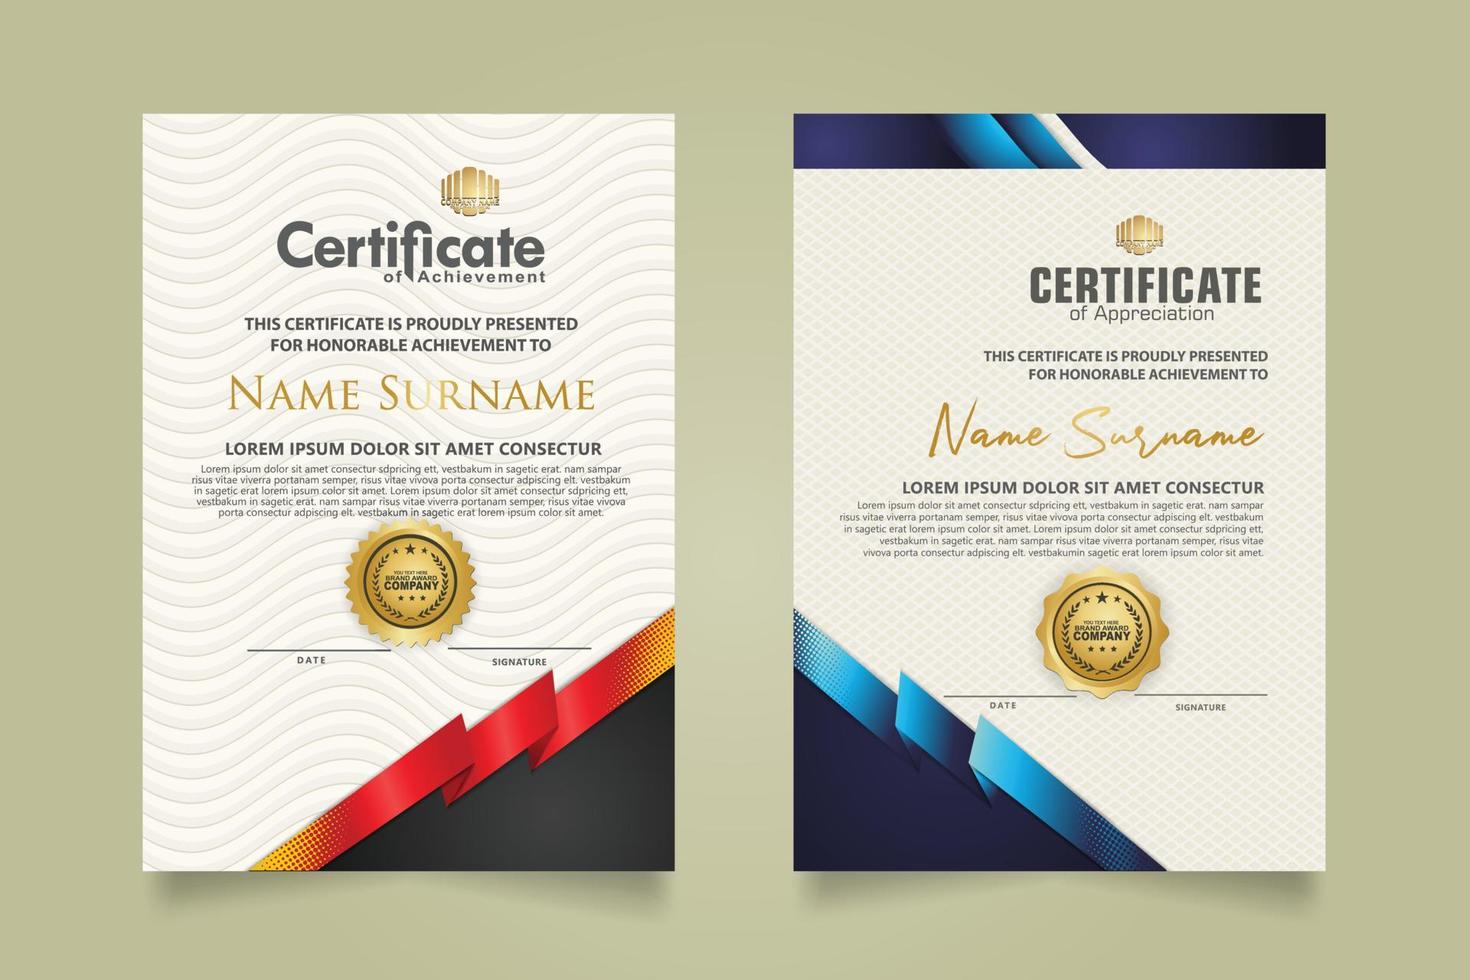 impostato certificato modello con nastro strisce ornamento e moderno struttura modello sfondo. diploma. vettore illustrazione